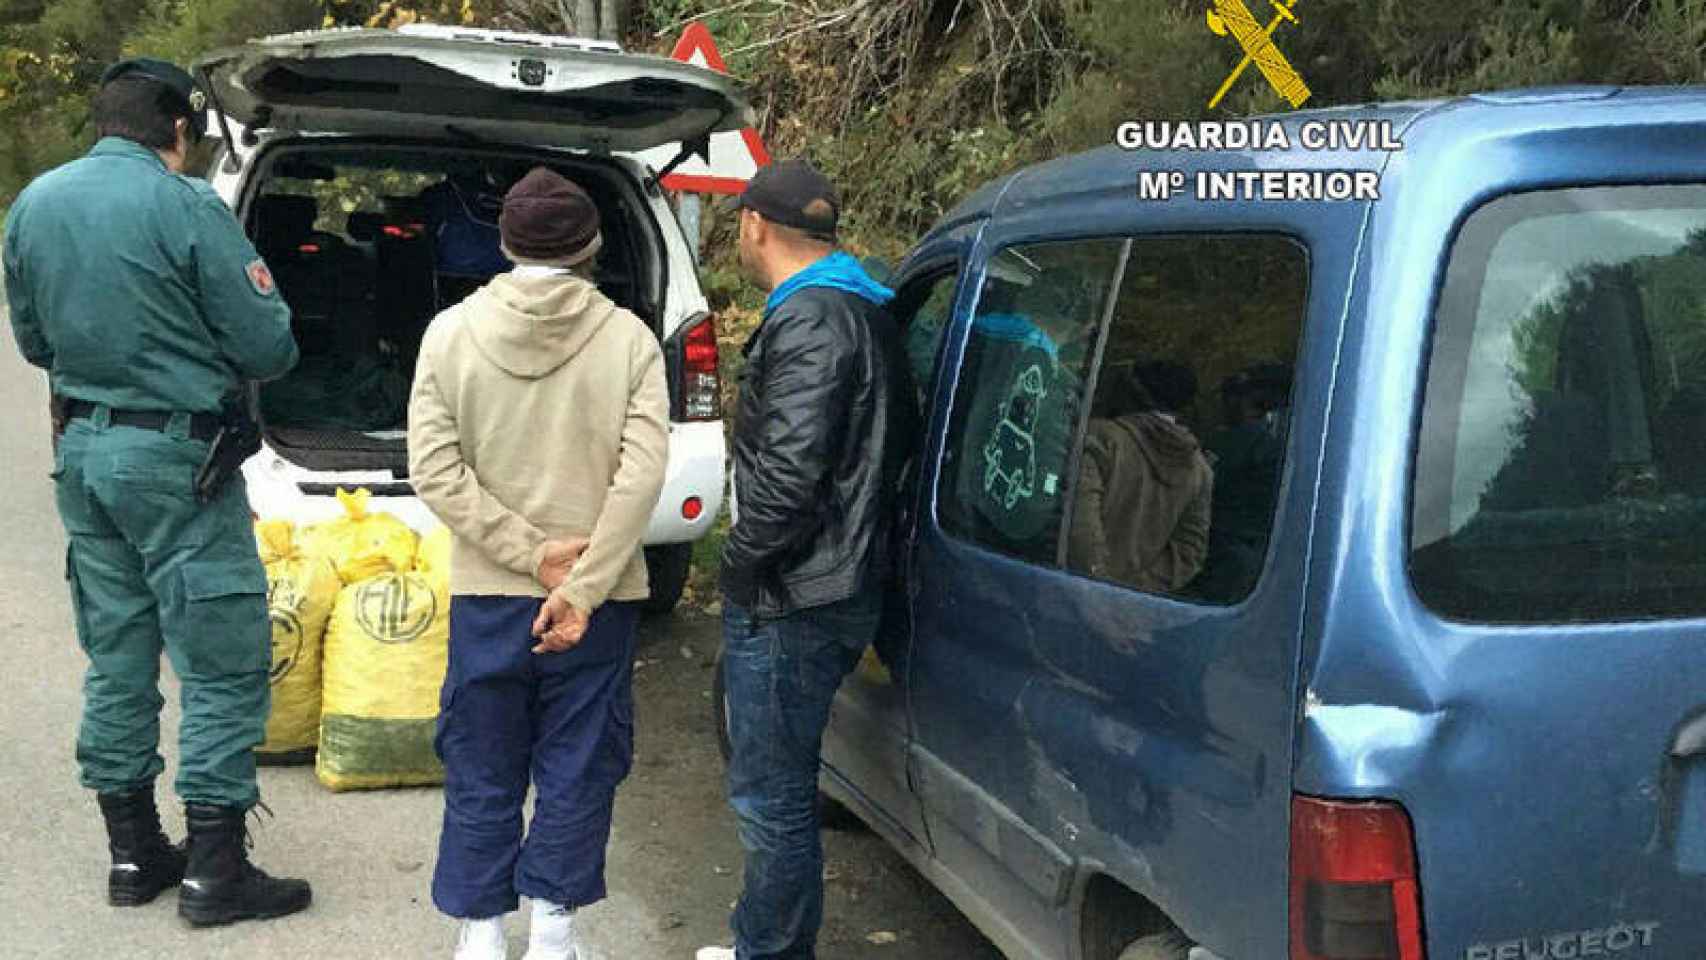 La Guardia Civil detiene a unos sospechosos de robos de castañas en El Bierzo (León)